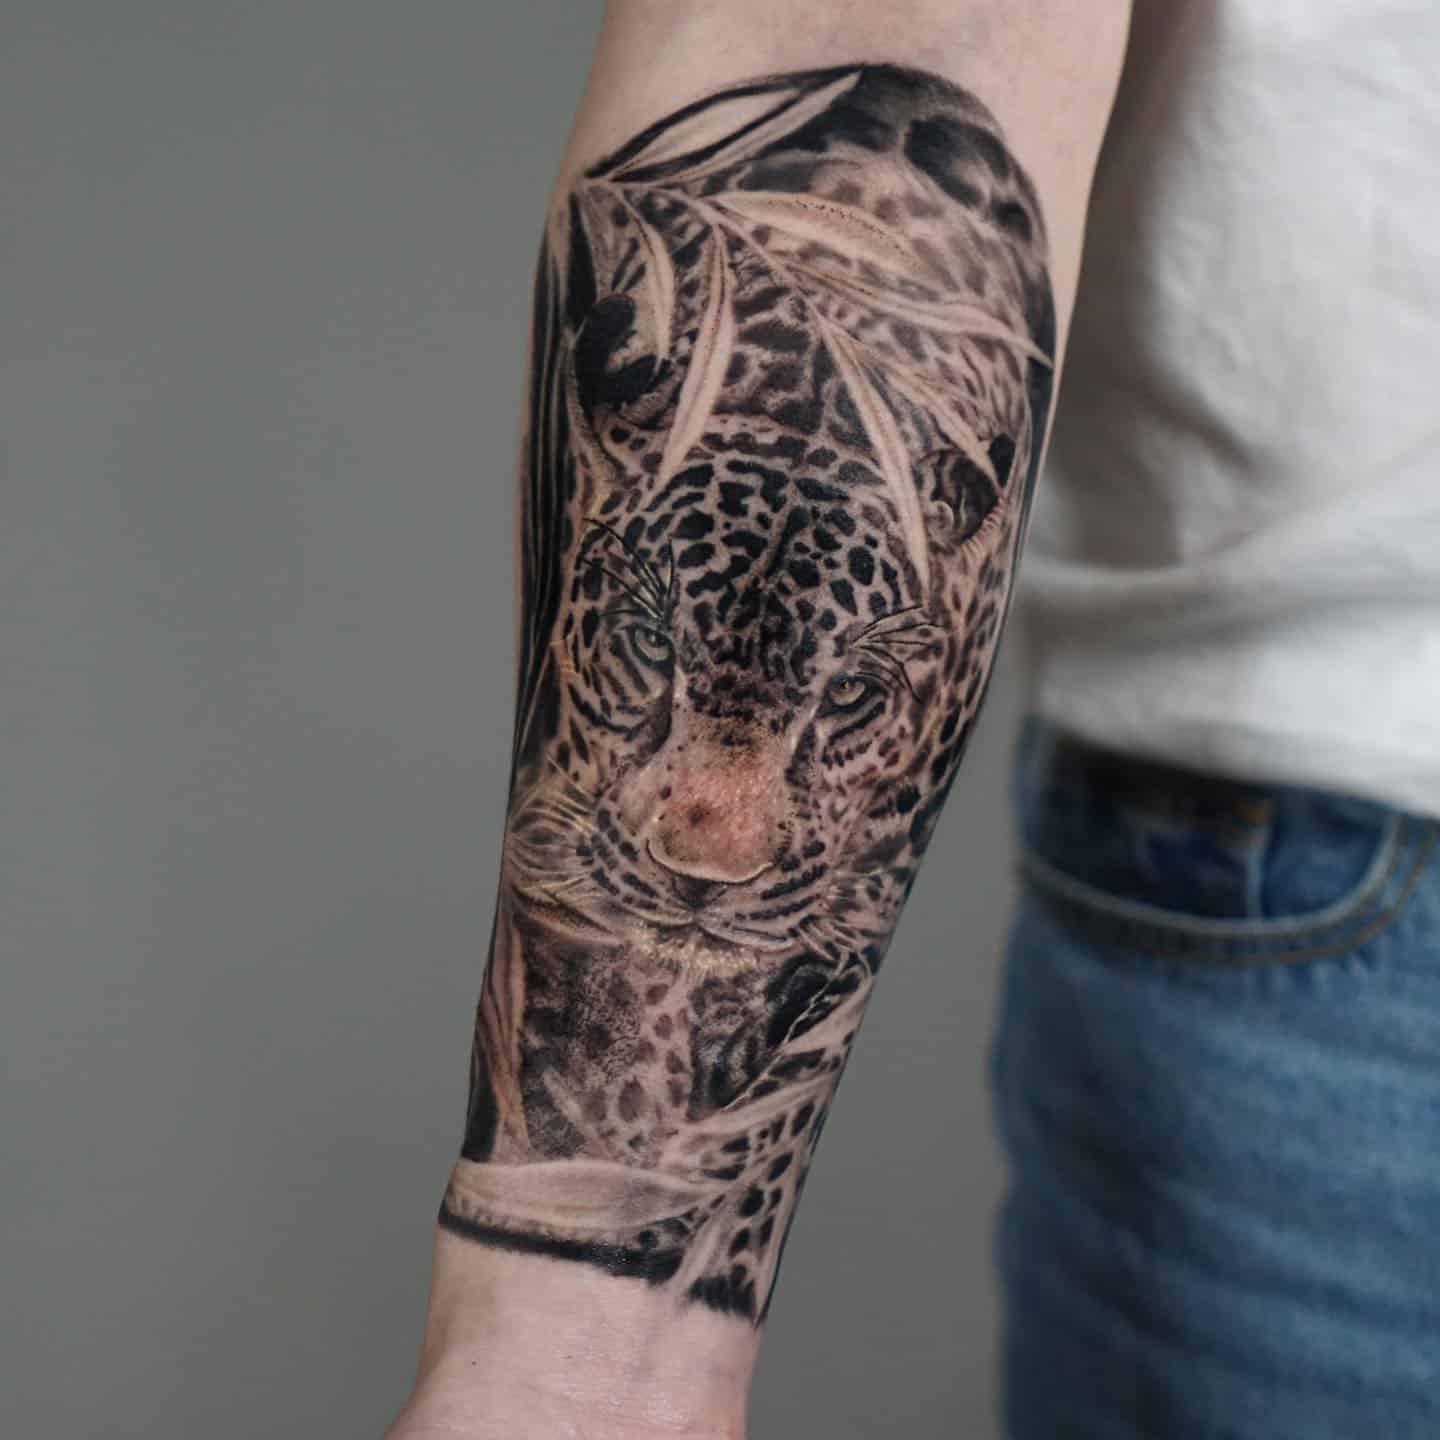 Leopard tattoo by kdh tattooer